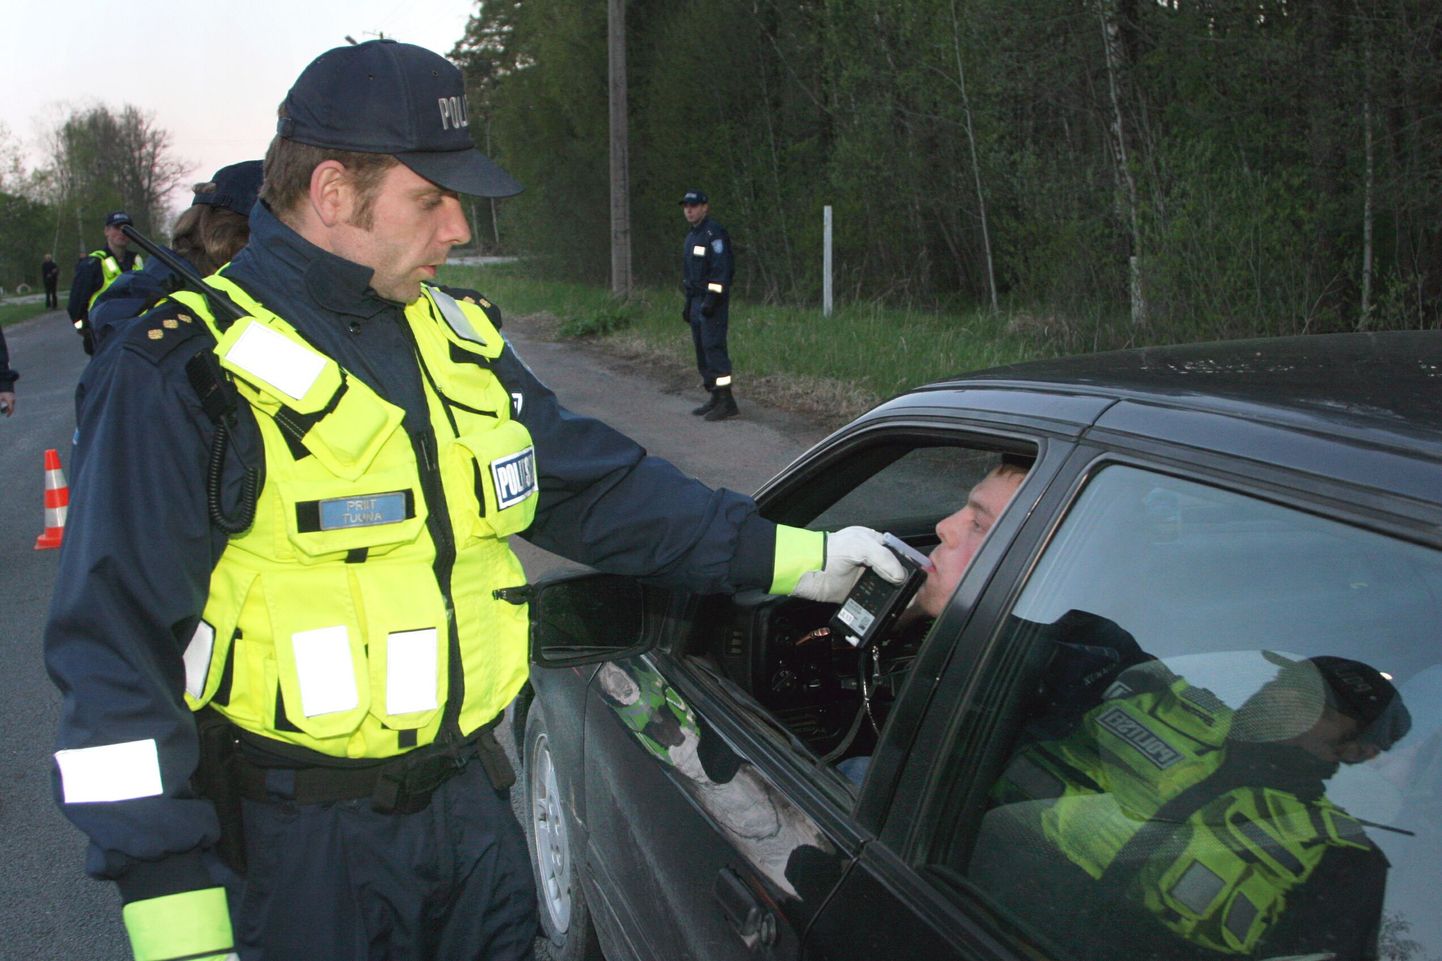 Pärnu politsei on pühade eel hakanud senisest tihedamini kontrollima sõidukijuhte. Foto politseireidist pärineb varasemast ajast.